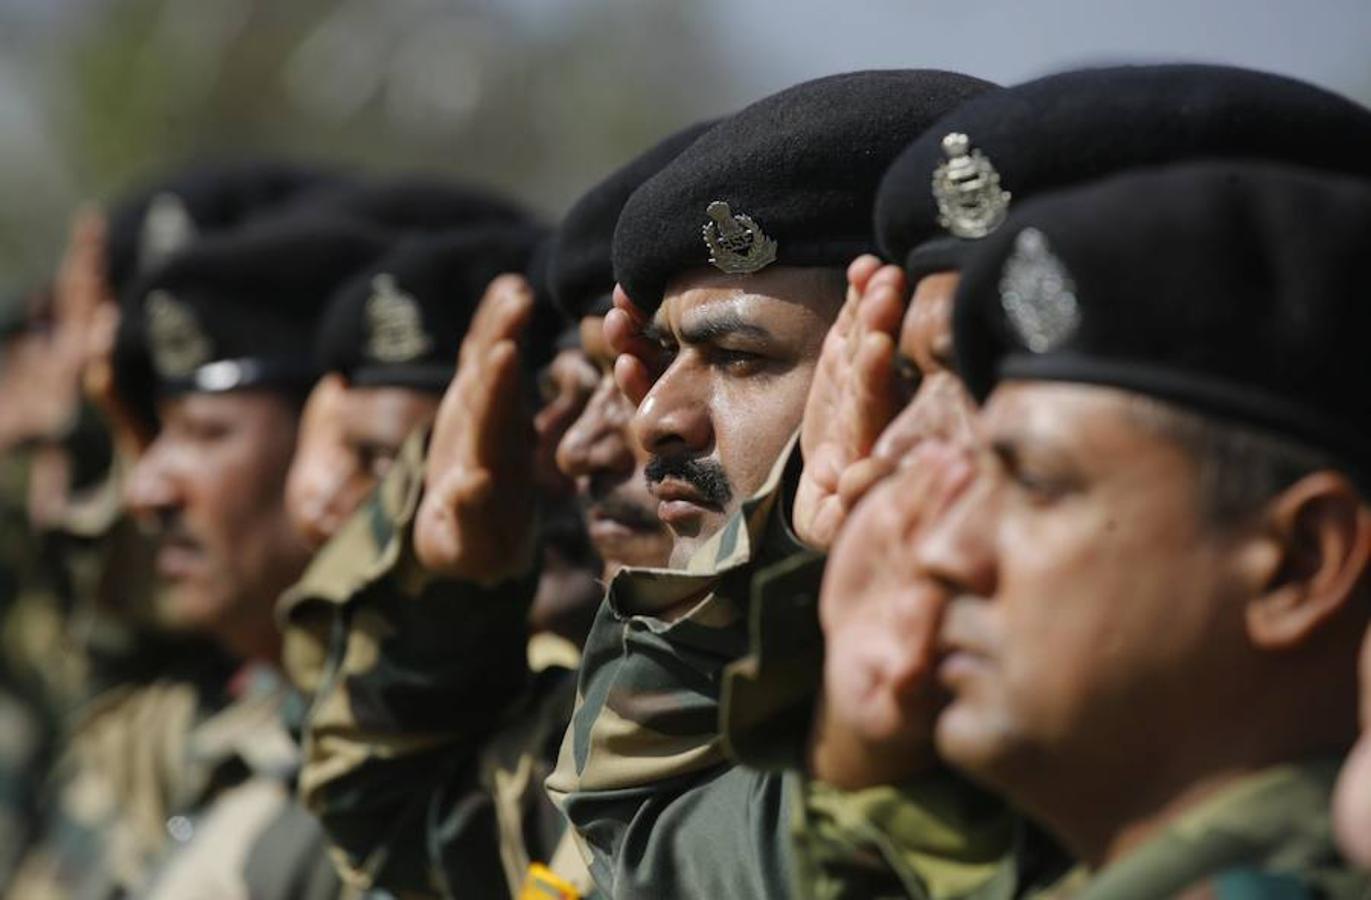 Miembros del cuerpo de guardafronteras indio (BSF) asisten al funeral de B.K Yadav, asistente subinspector del BSF en la sede del BSF en Srinagar, capital de verano de la Cachemira, India. B.K. Yadav murió este martes en un ataque a un campamento militar próximo al aeropuerto de Sringar, y un día después sus compañeros le dicen adiós.